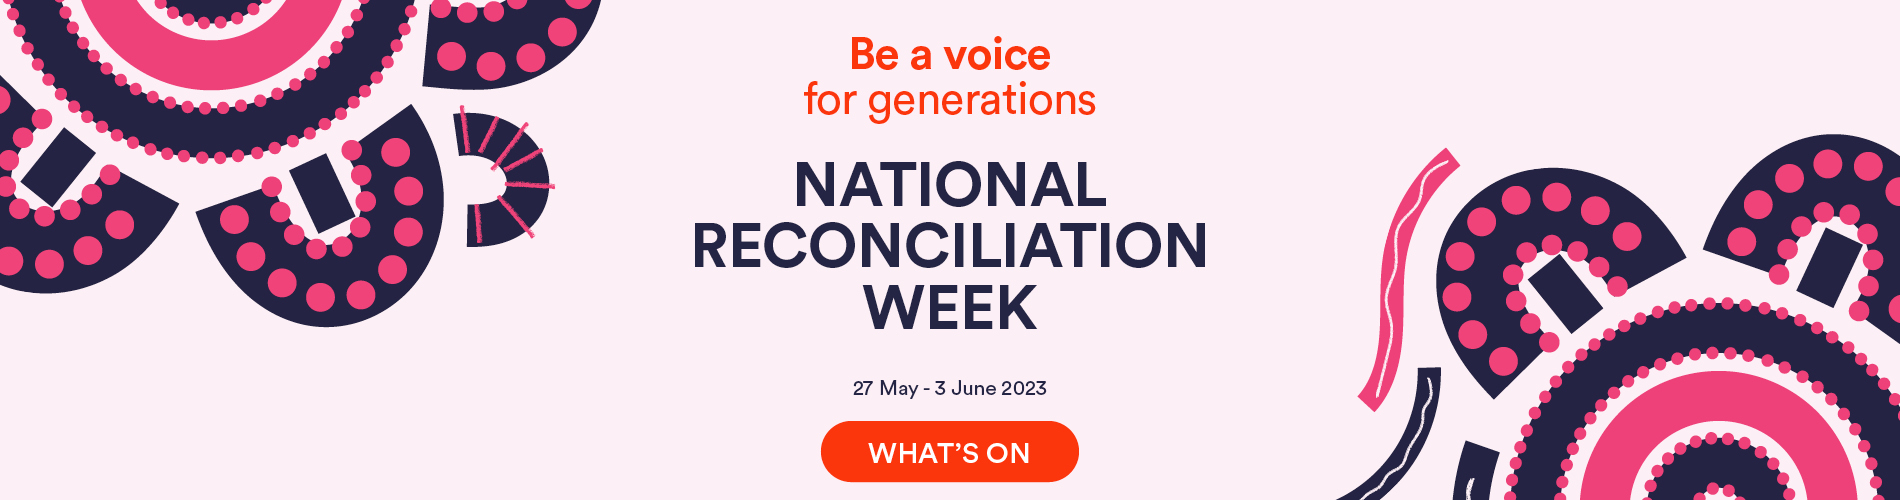 LL18762 UR MQ National Reconciliation Week 2023 Web Carousel 1900x500px FA.jpg